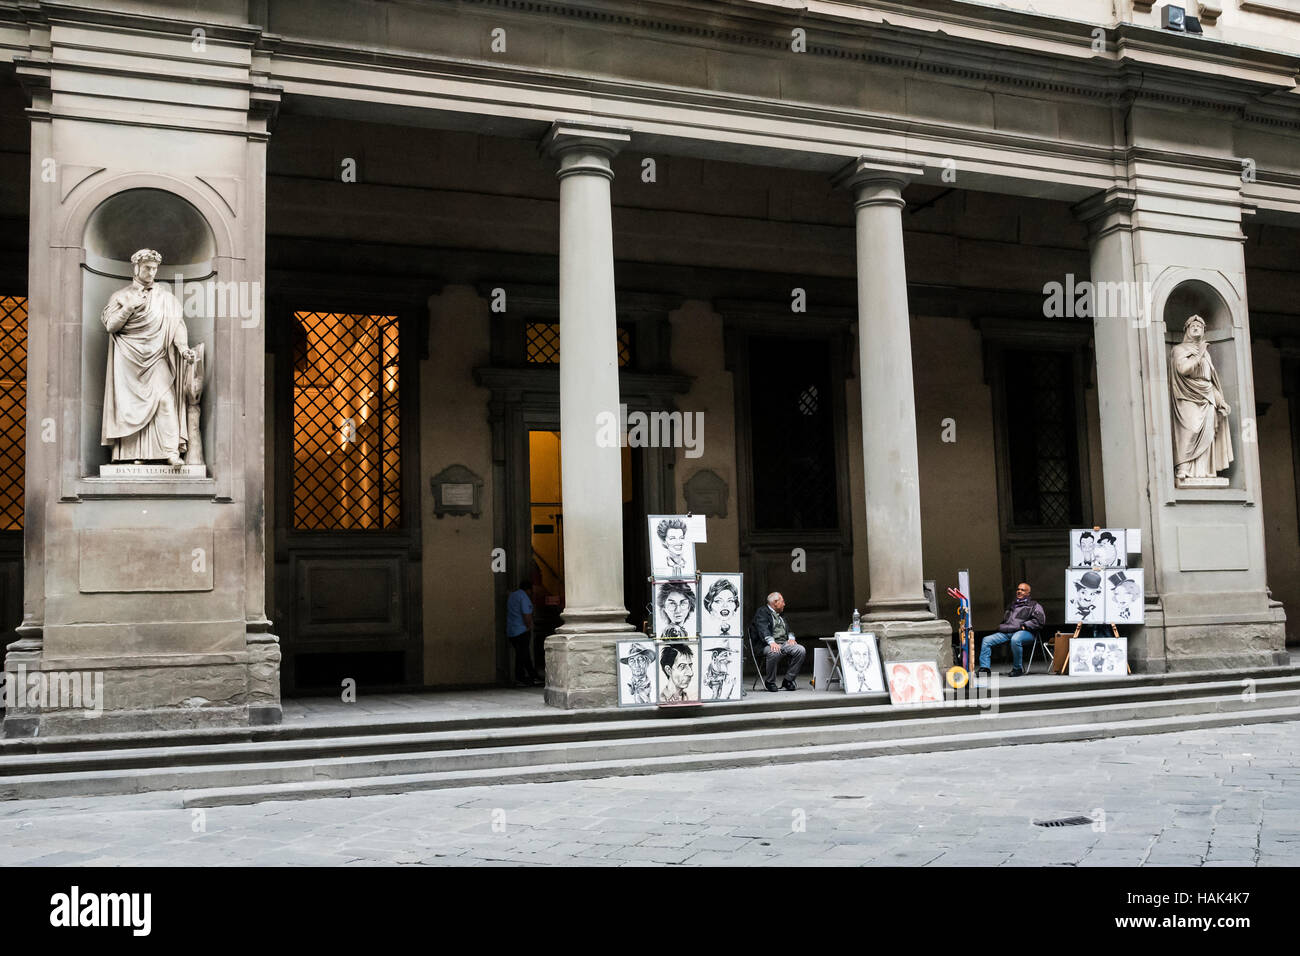 Les artistes de rue et de sculptures antiques, Florence, capitale de la région Toscane, Italie Banque D'Images